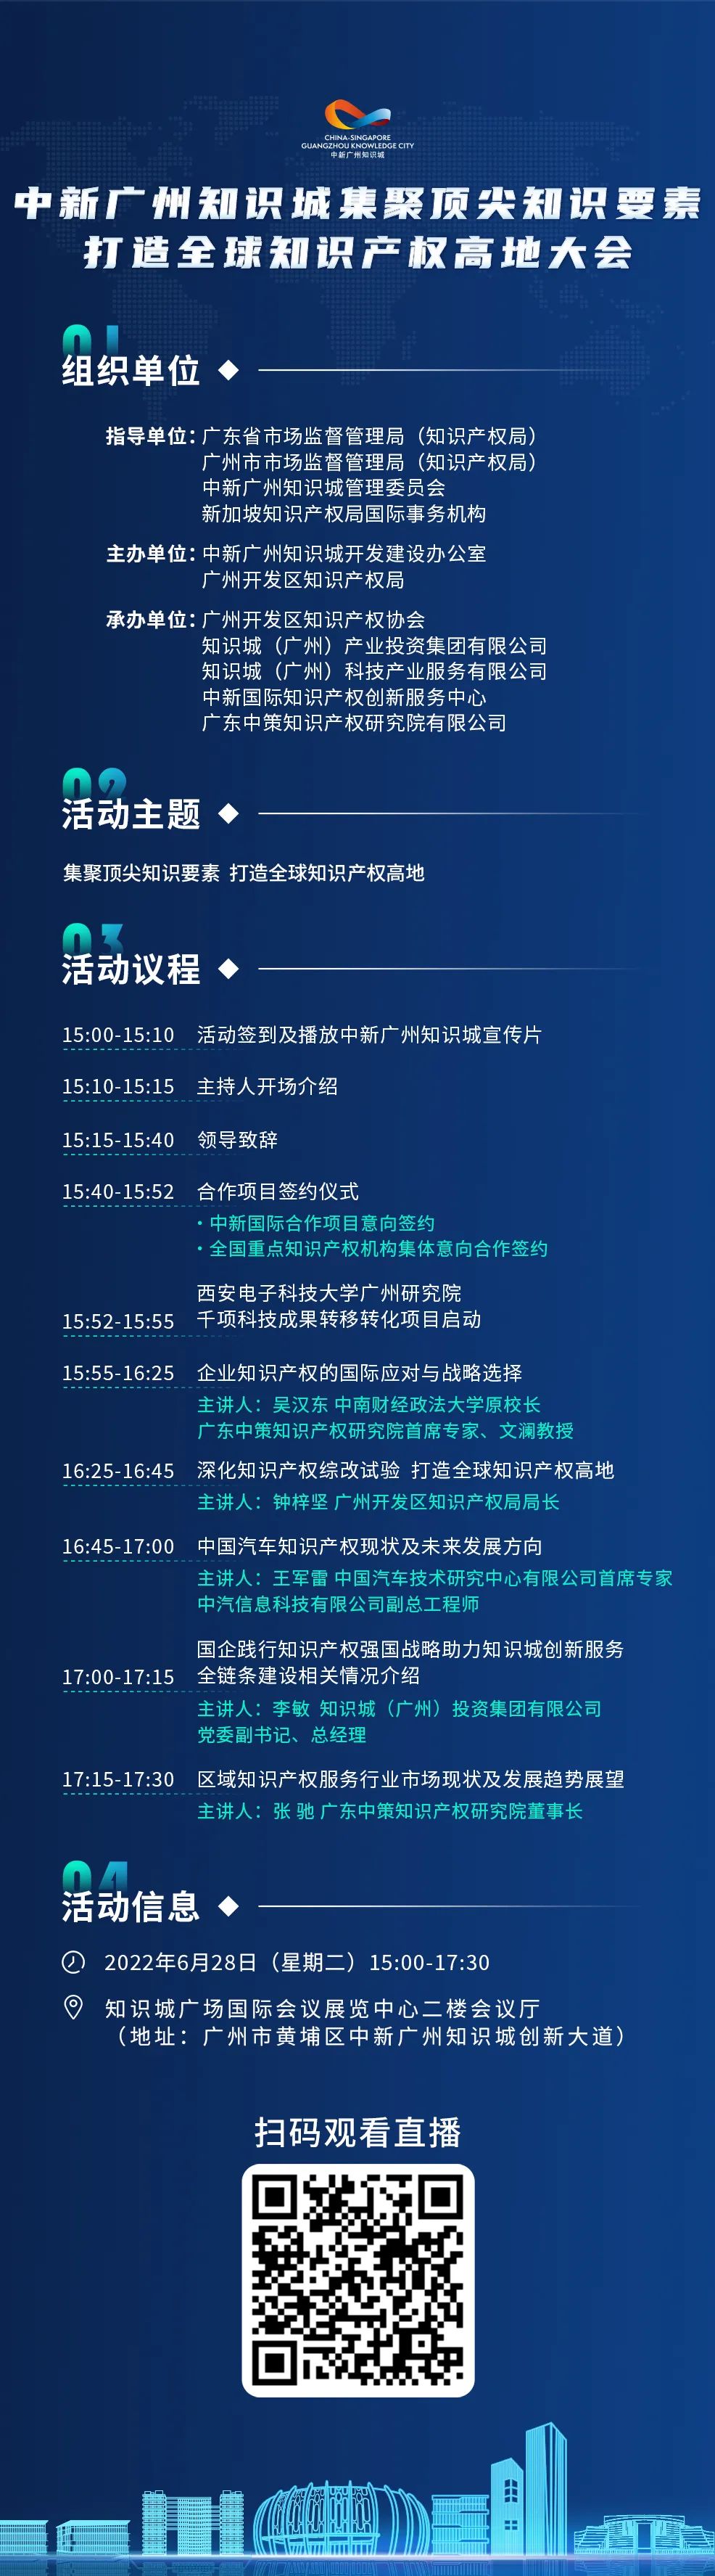 今日15:00直播！2022年中新广州知识城集聚顶尖知识要素打造全球知识产权高地大会邀您观看